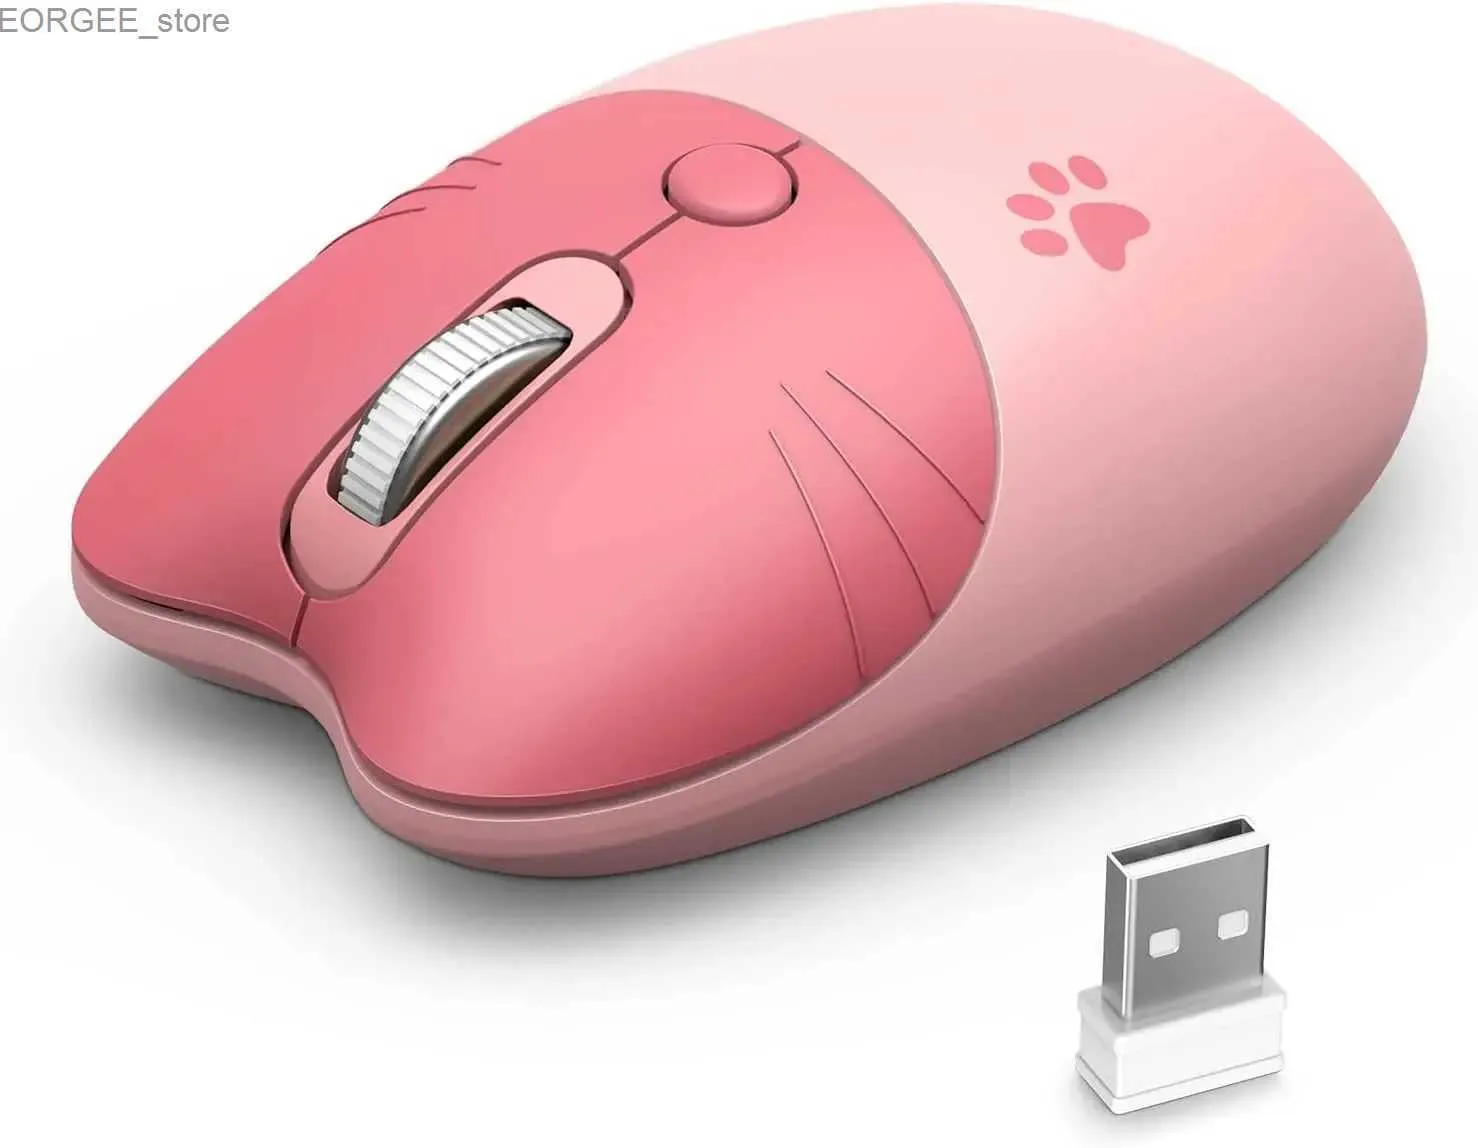 Мыши Mofii милый кот 2.4g беспроводной мыши USB -приемник USB -приемник и игра 3 регулируемый DPI, совместимый с ноутбуками и компьютерами Y240407